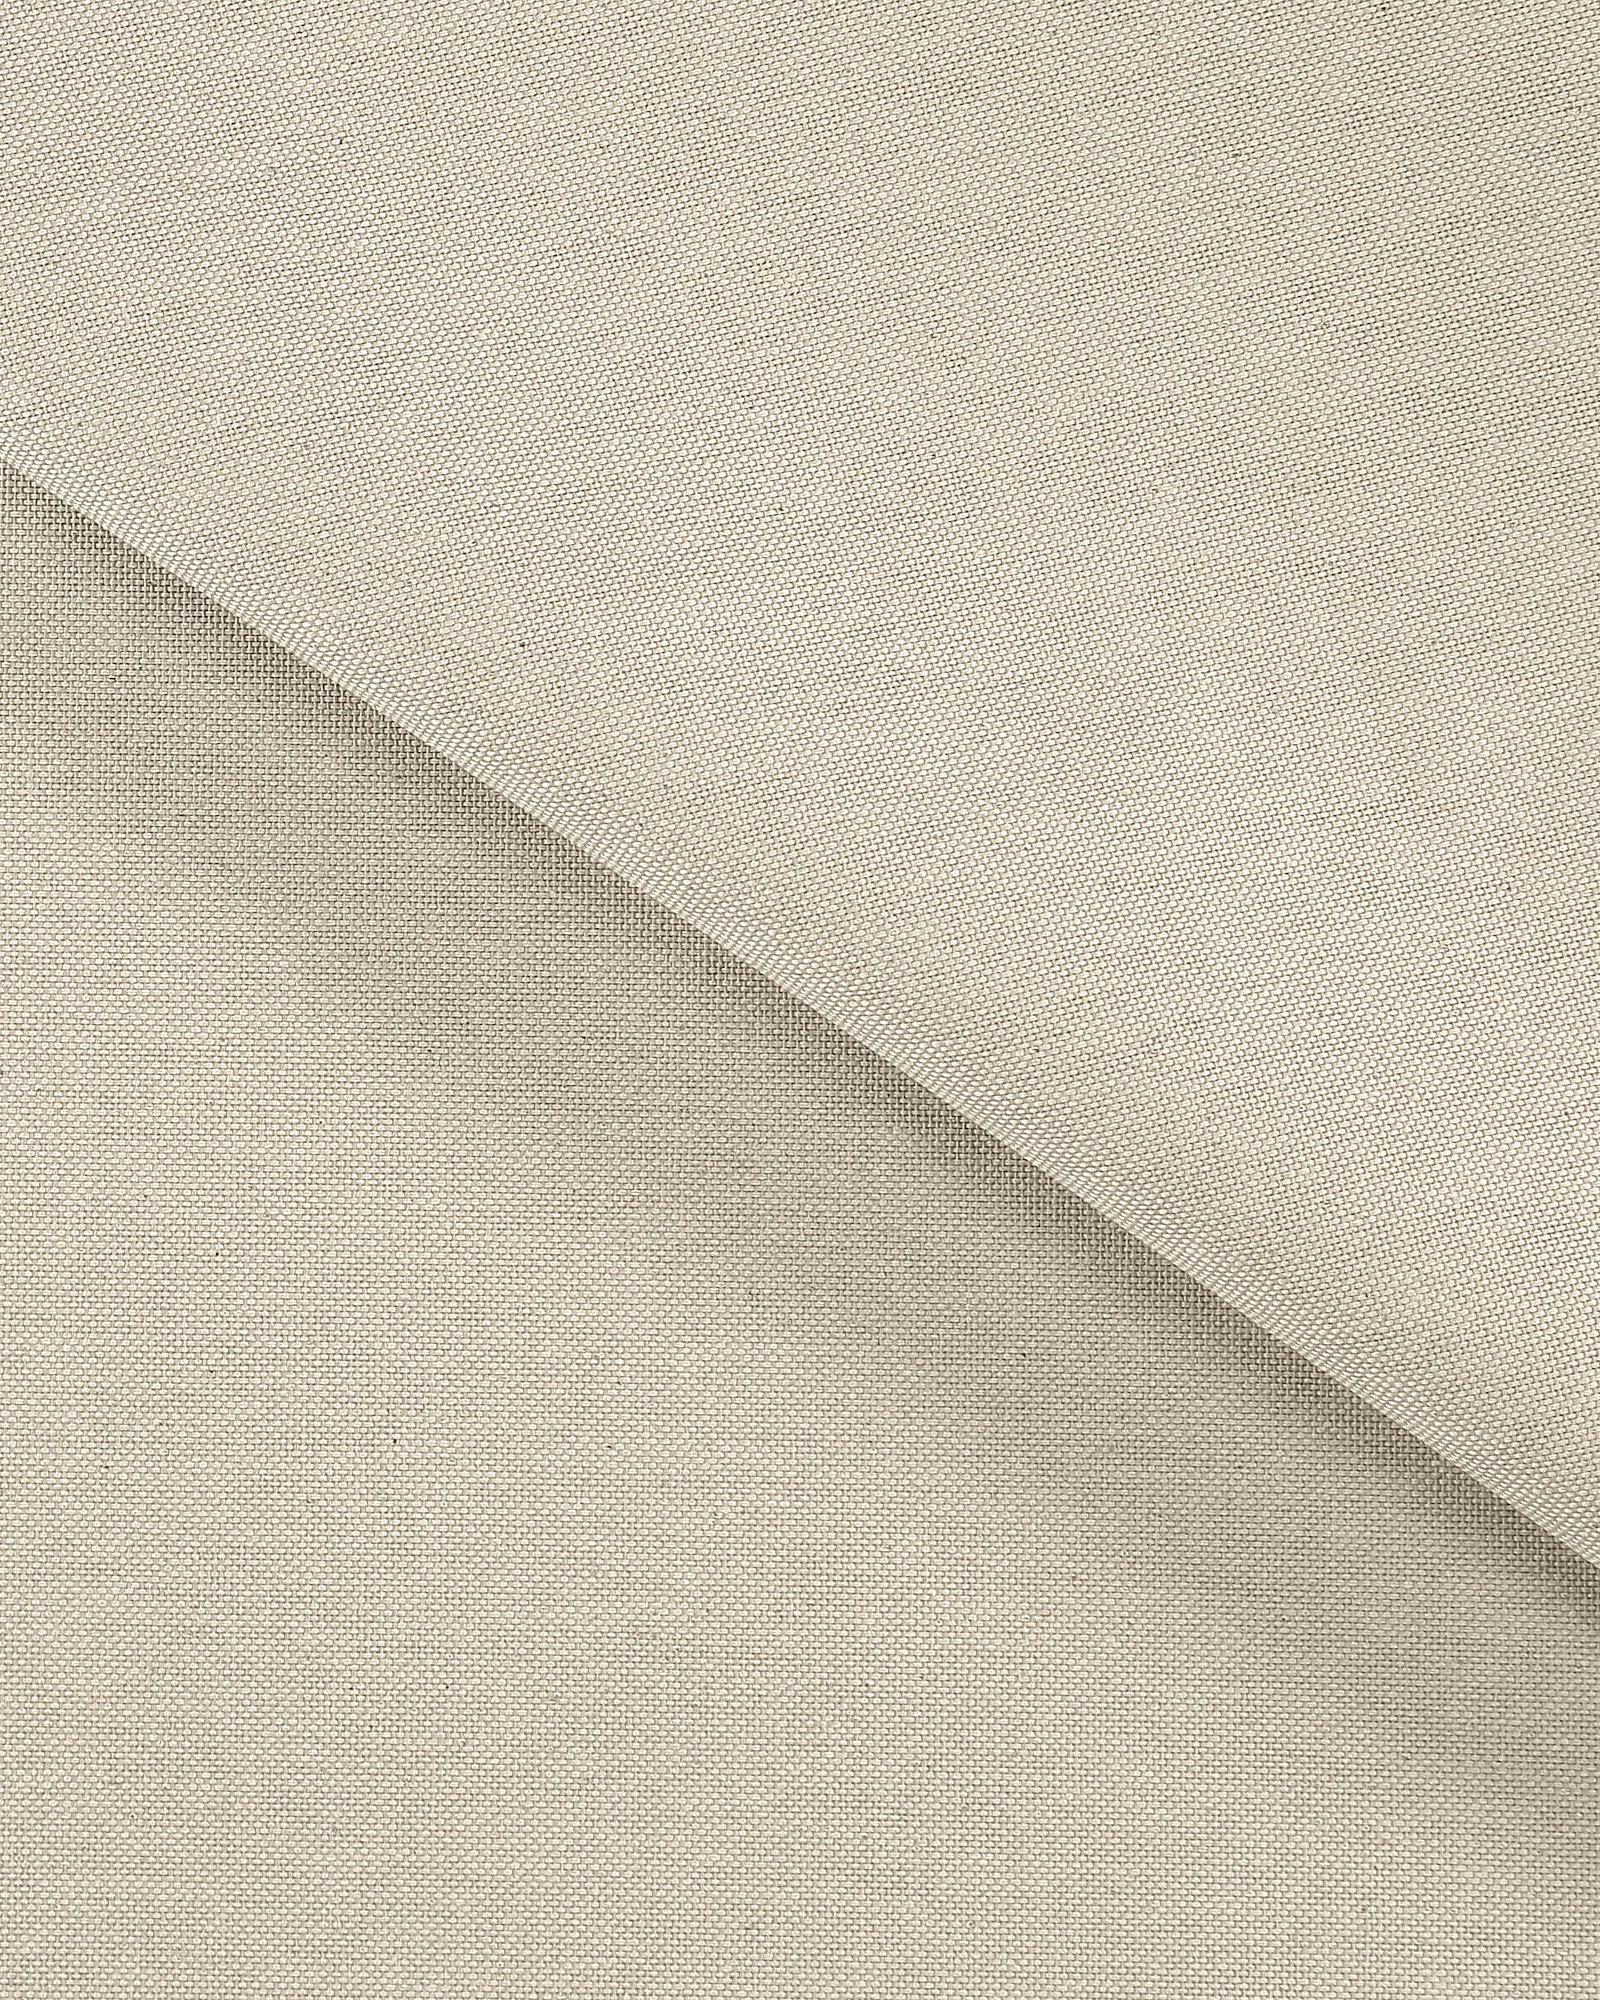 Tekstilvoksduk linlook/lys grå 158-160cm 872301_pack